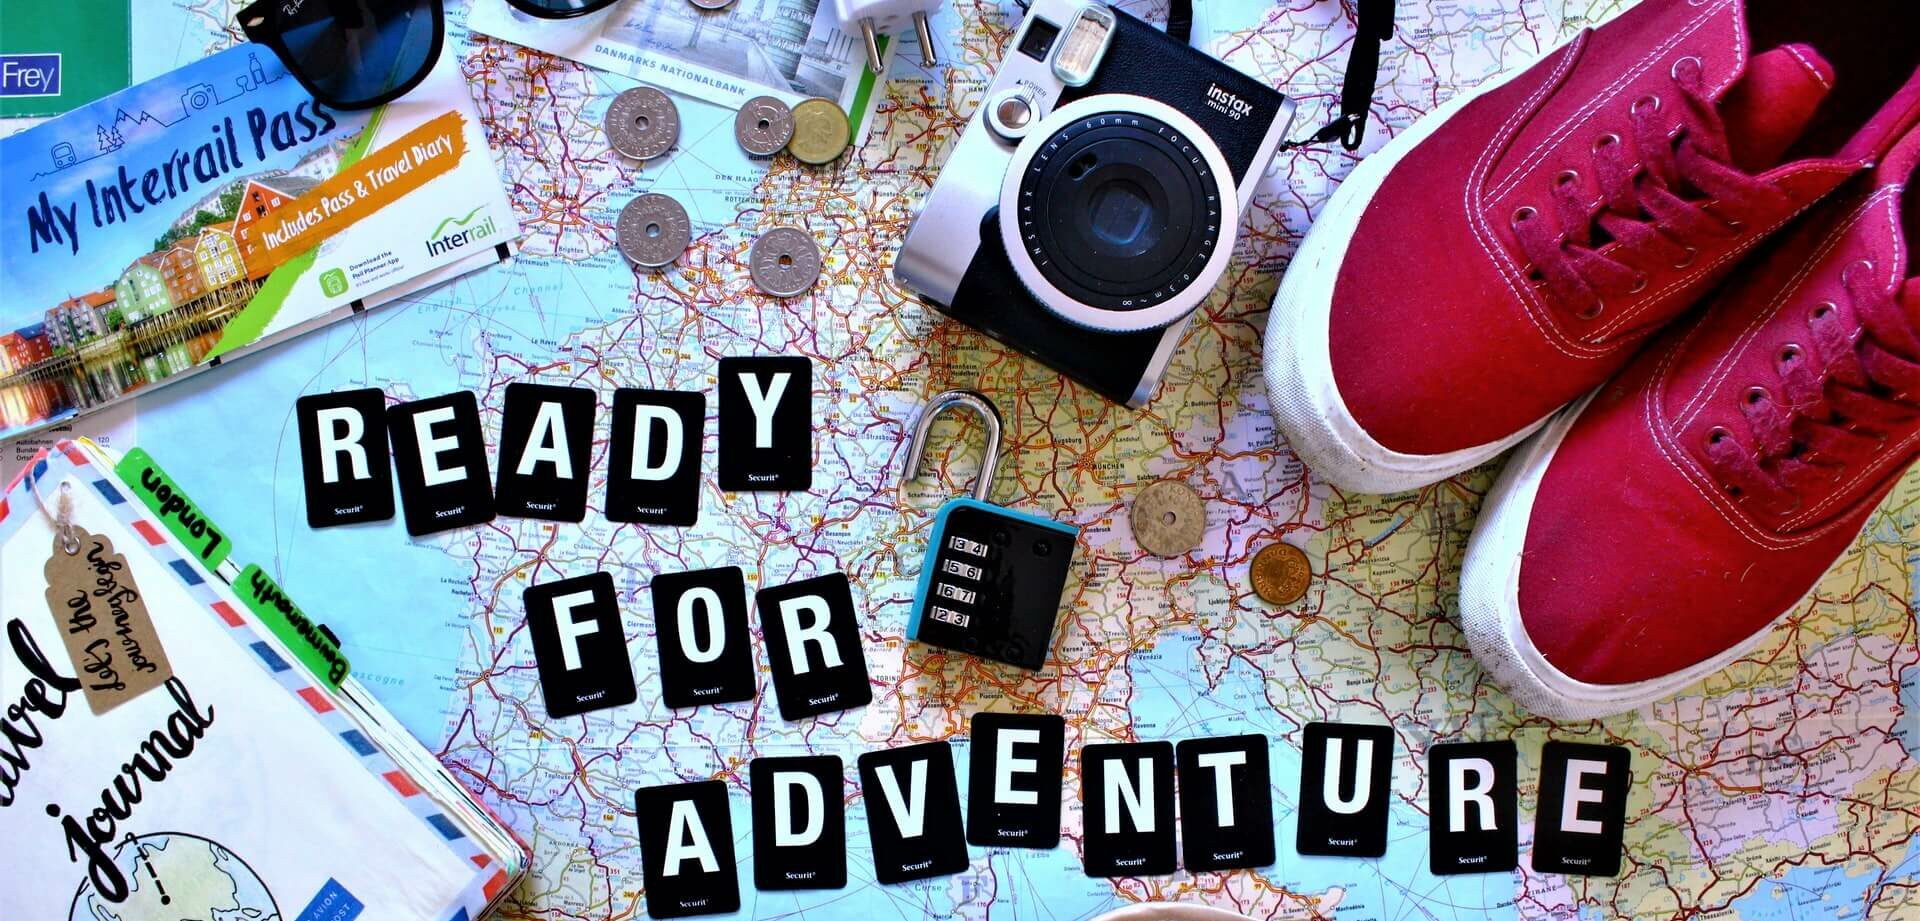 Top 15 Reise Gadgets: Coole Sachen für den Urlaub (2024